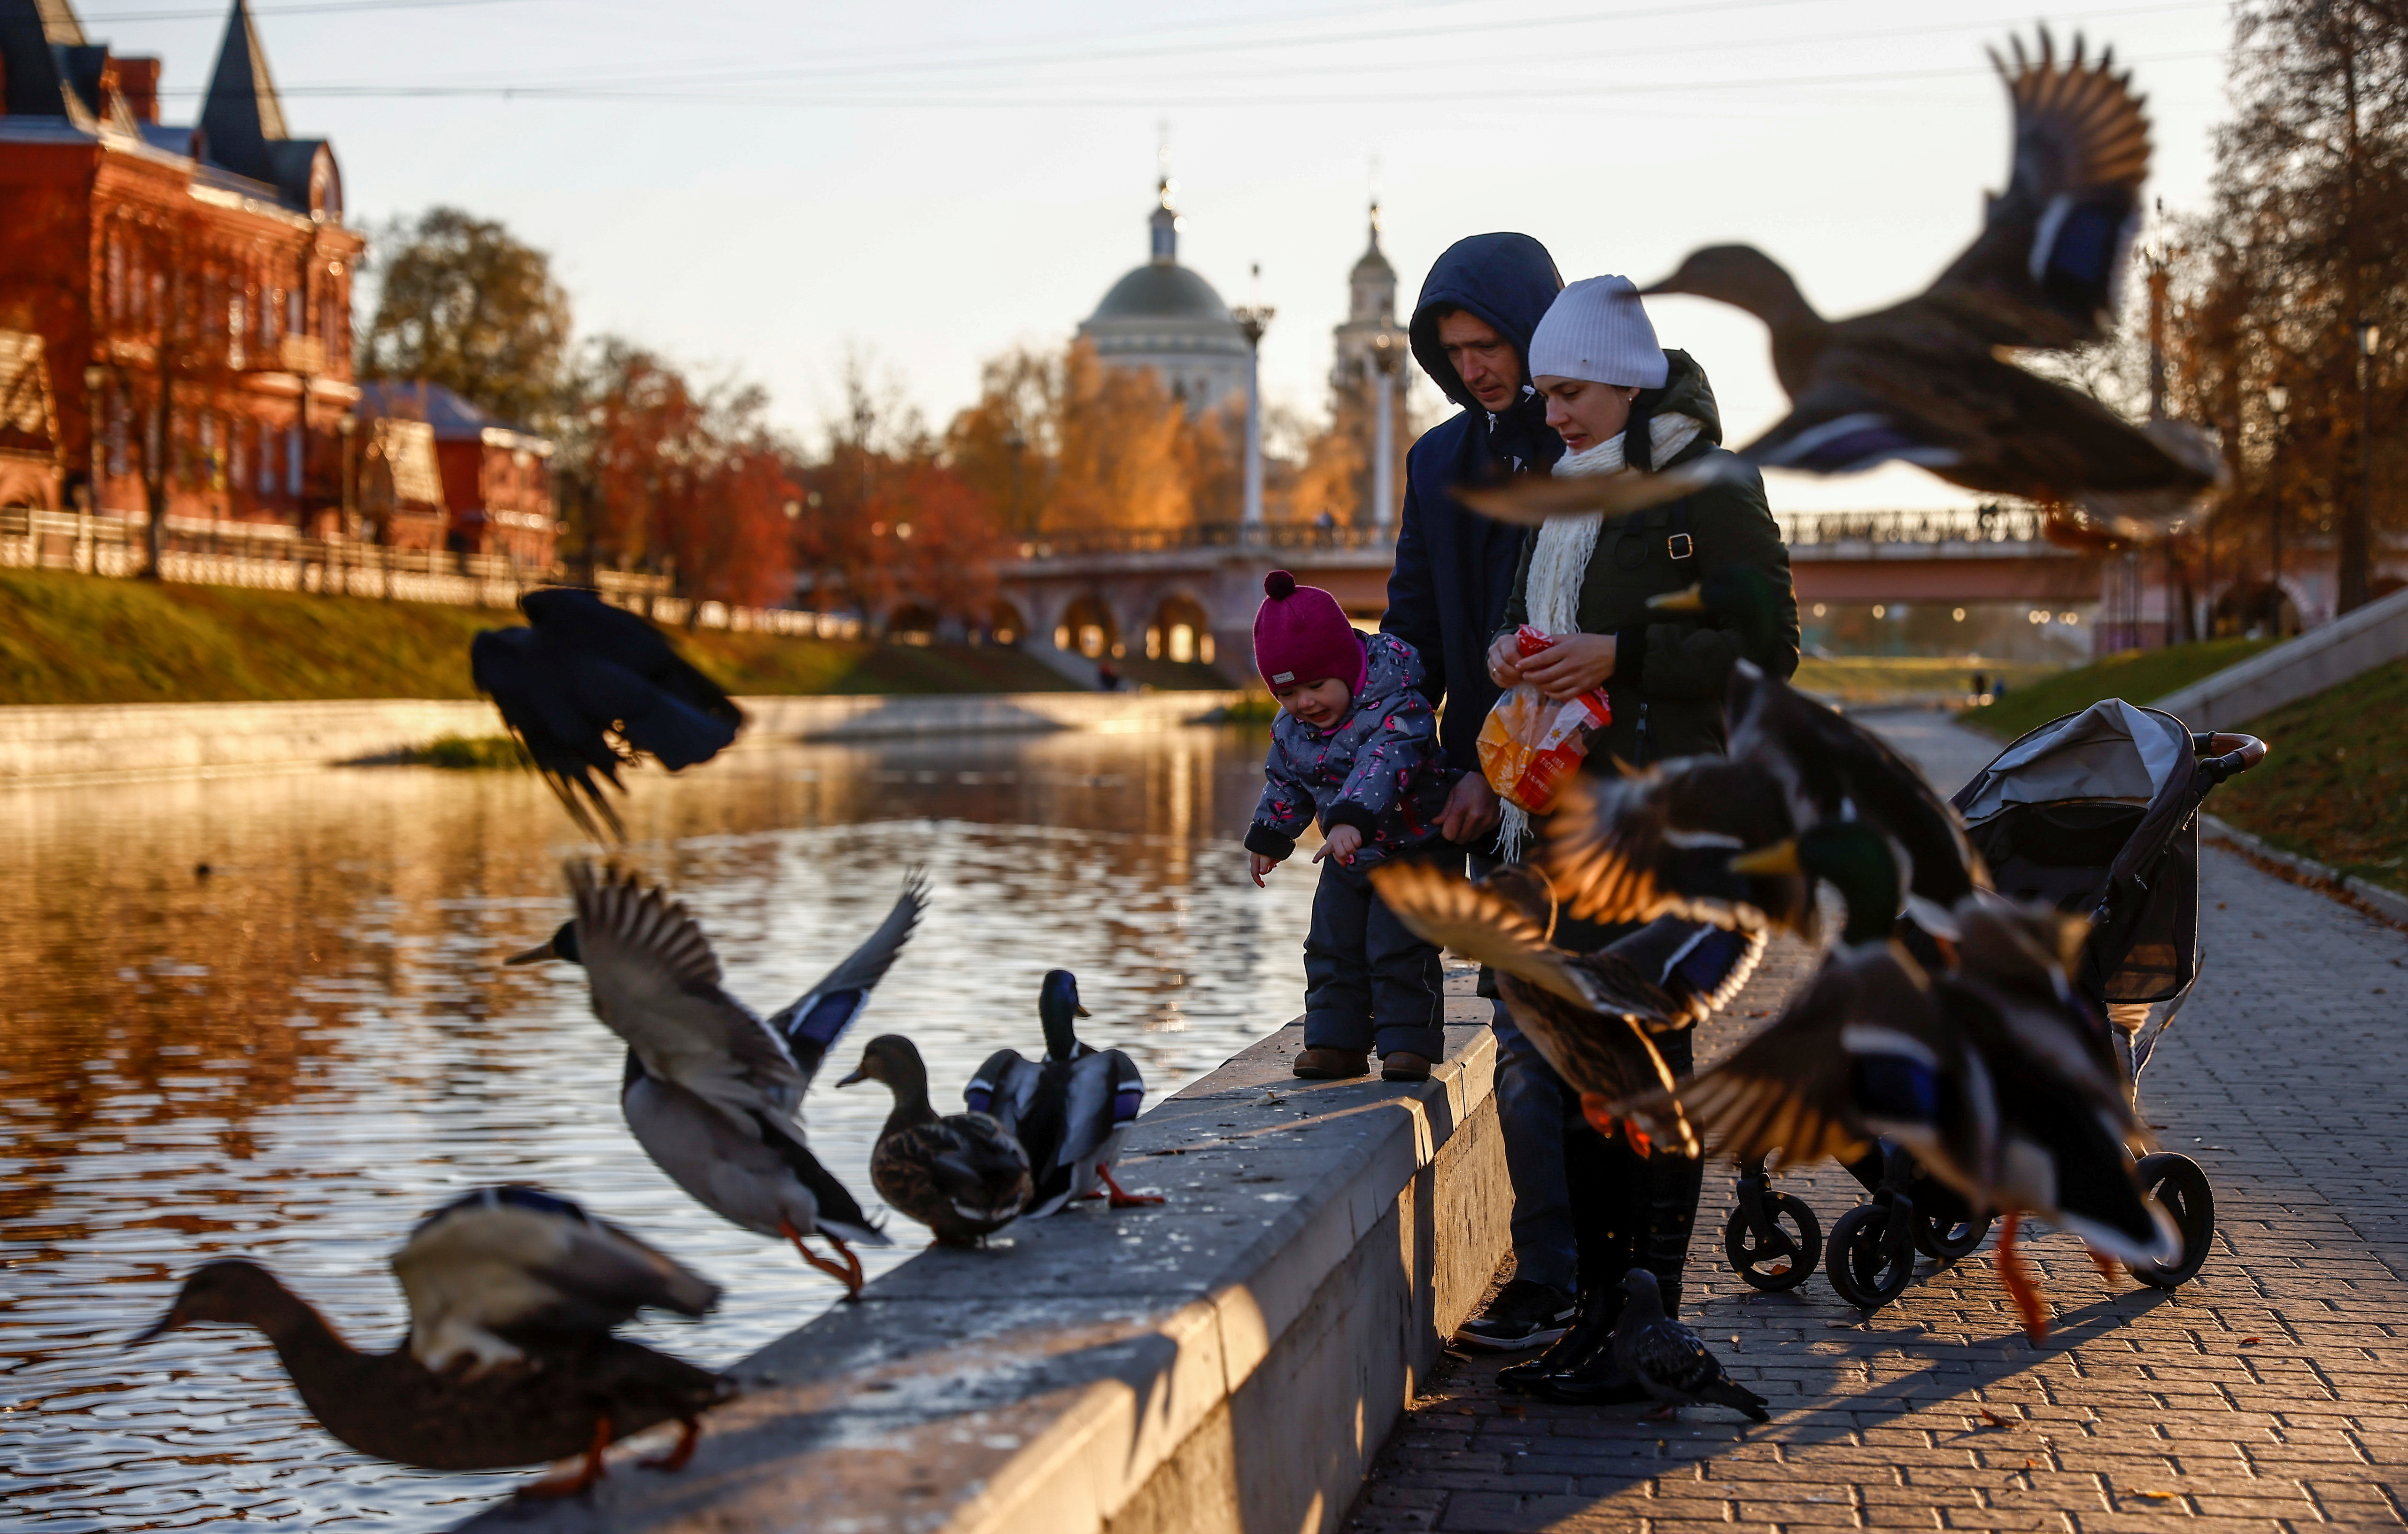 People feed ducks in Oryol